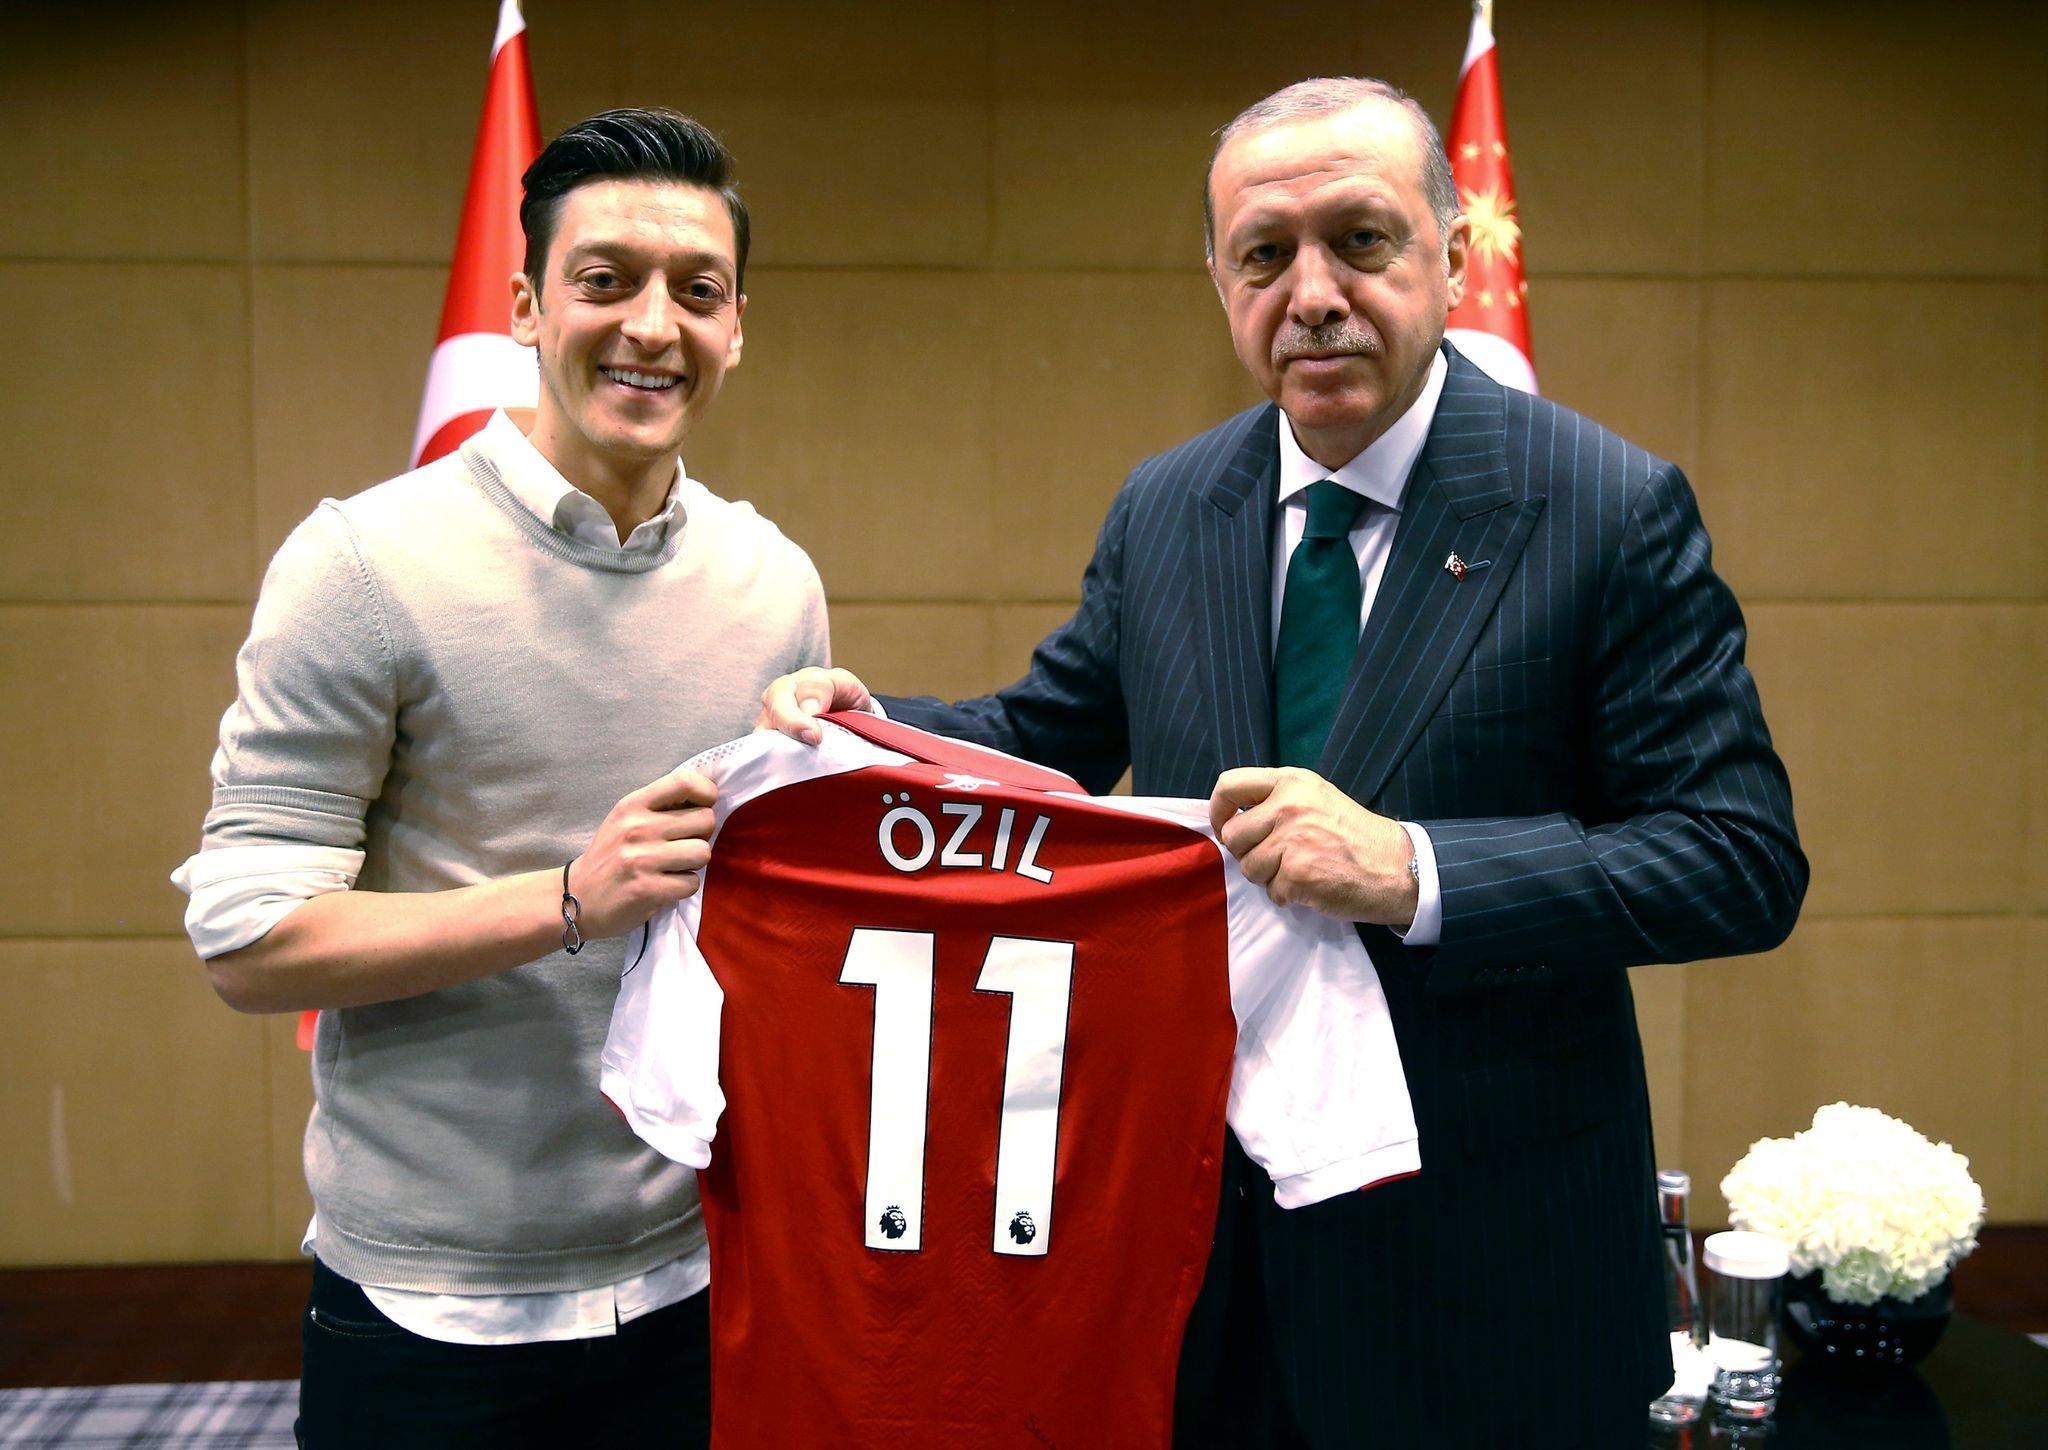 Mesut Özil teilt nach Wahlsieg erneut Foto mit Erdogan